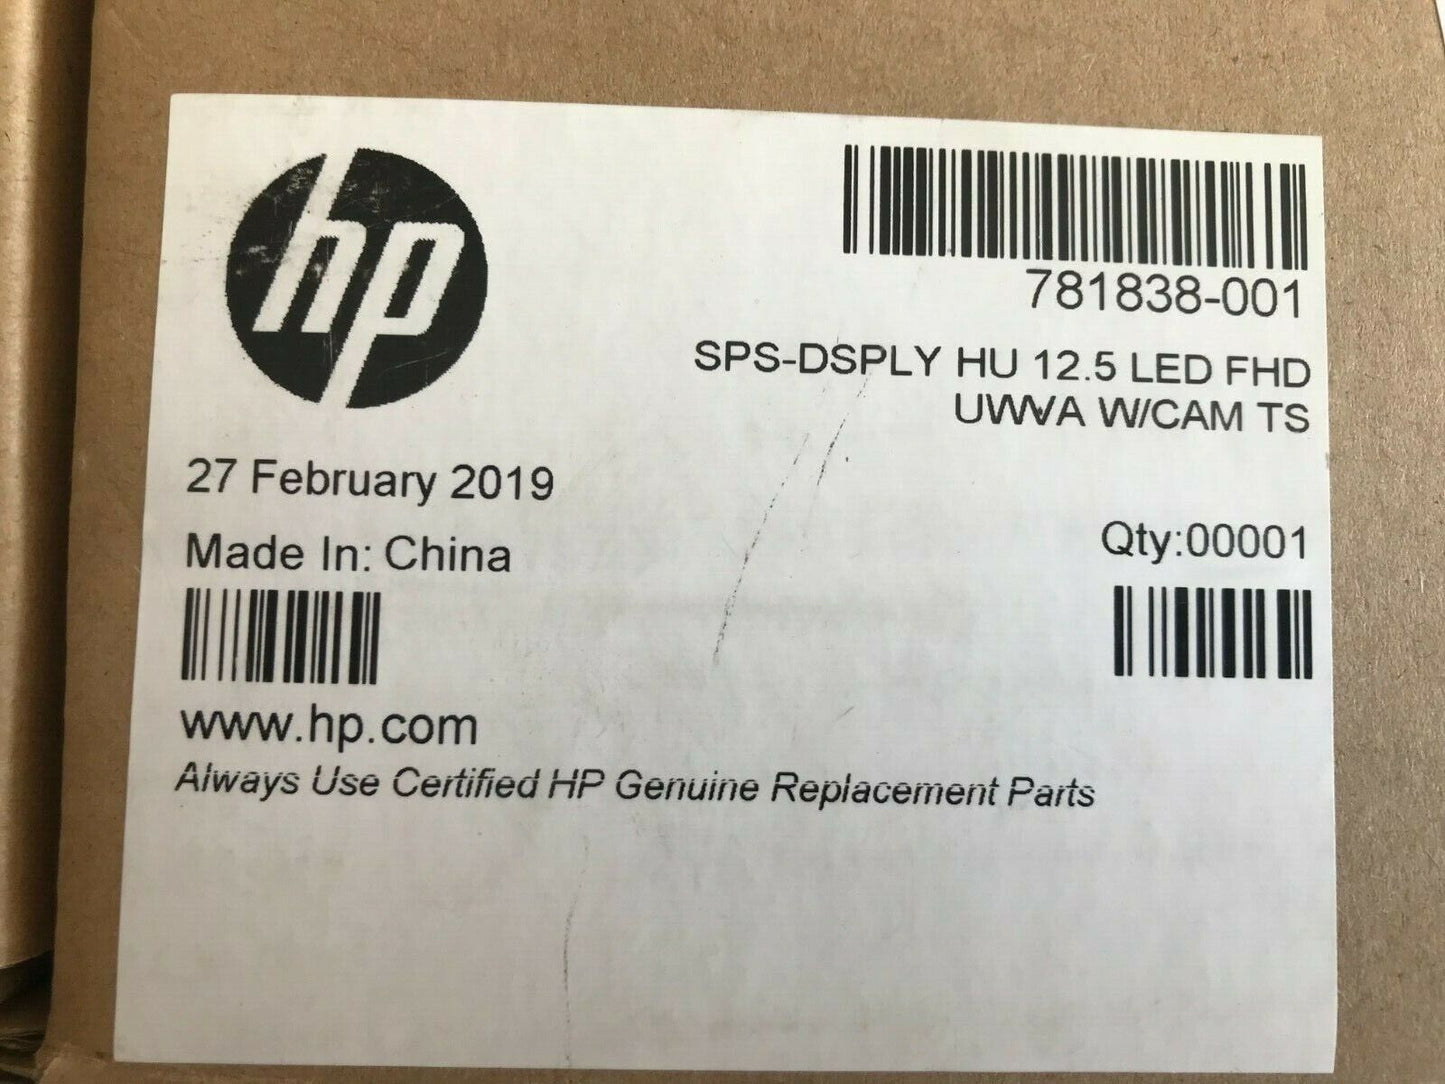 NEW Genuine HP 781838-001 DISPLAY 12.5 LED FHD UWVA ELITEBOOK 820 G3